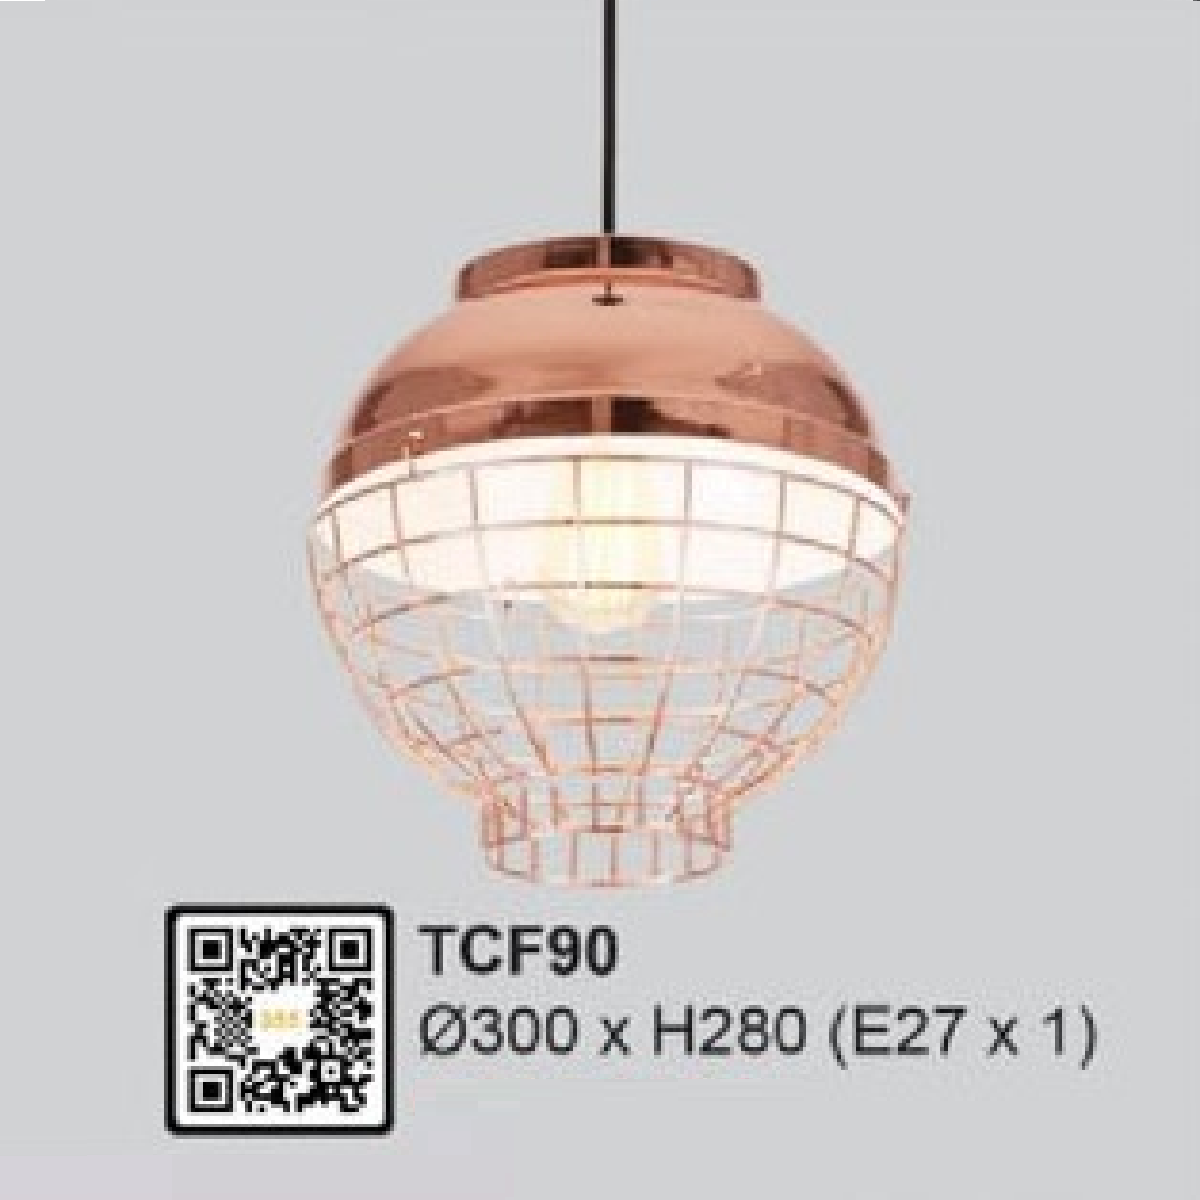 35 -TCF90: Đèn thả đơn - KT: Ø300mm x H280mm - Bóng đèn E27 x 1 bóng